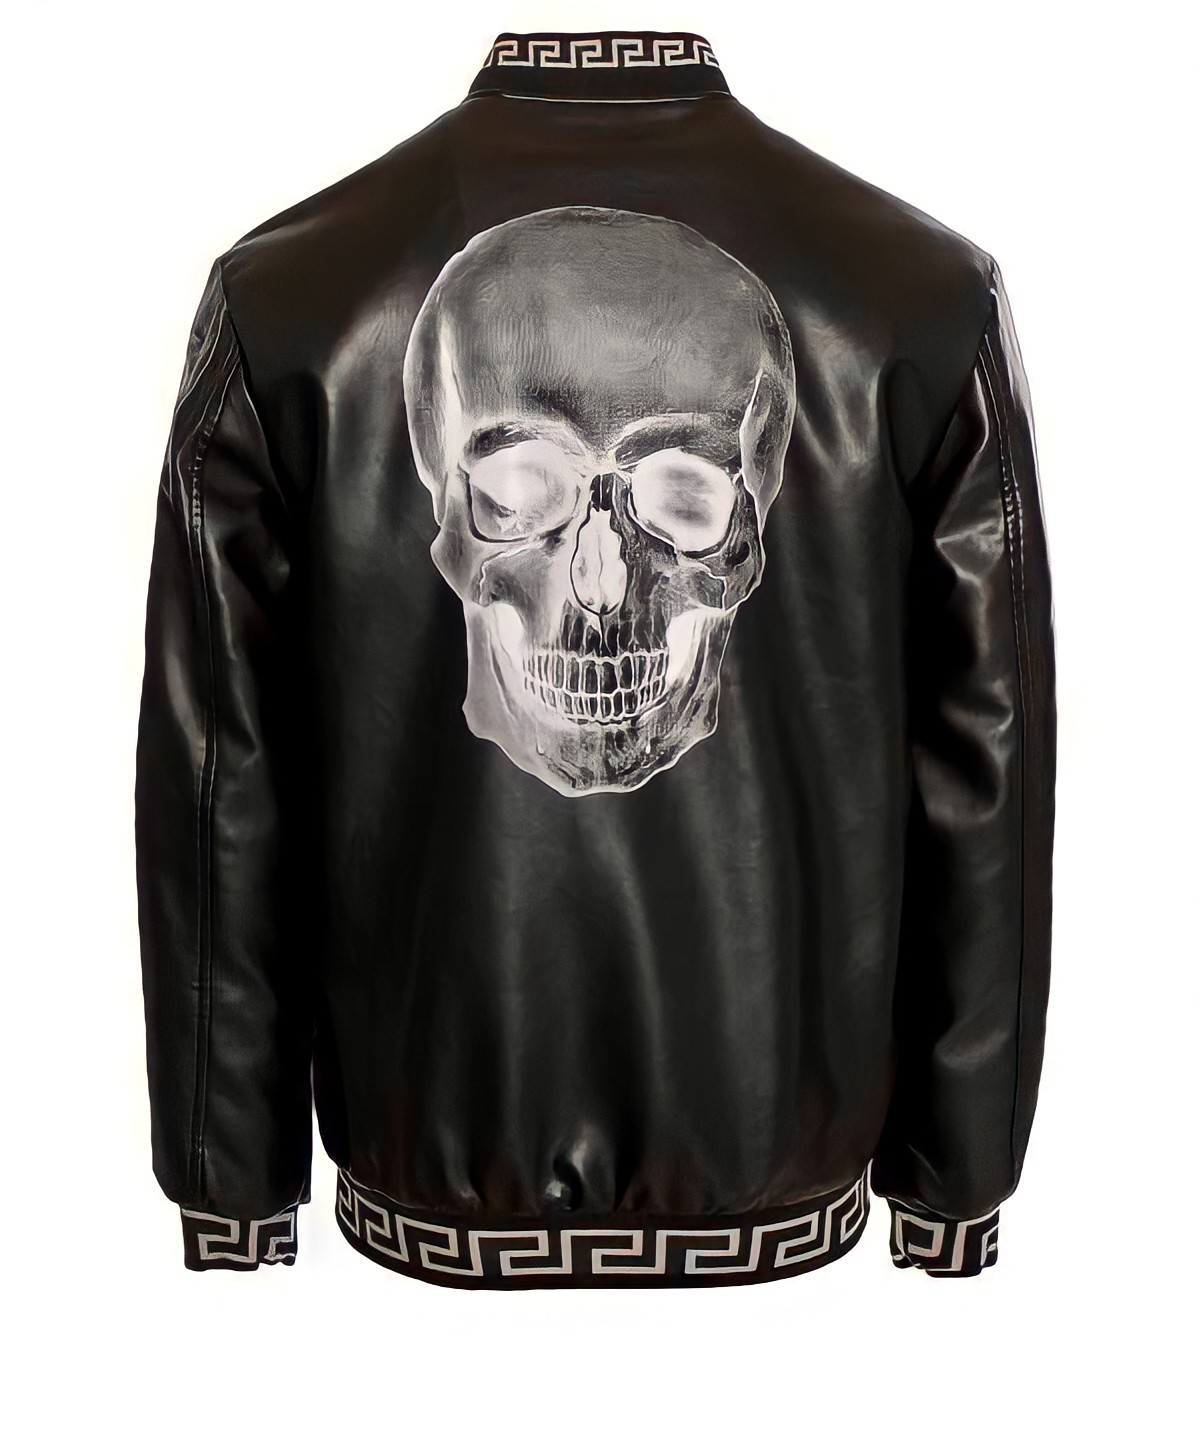 White/Black Skull Jacket – Clothing